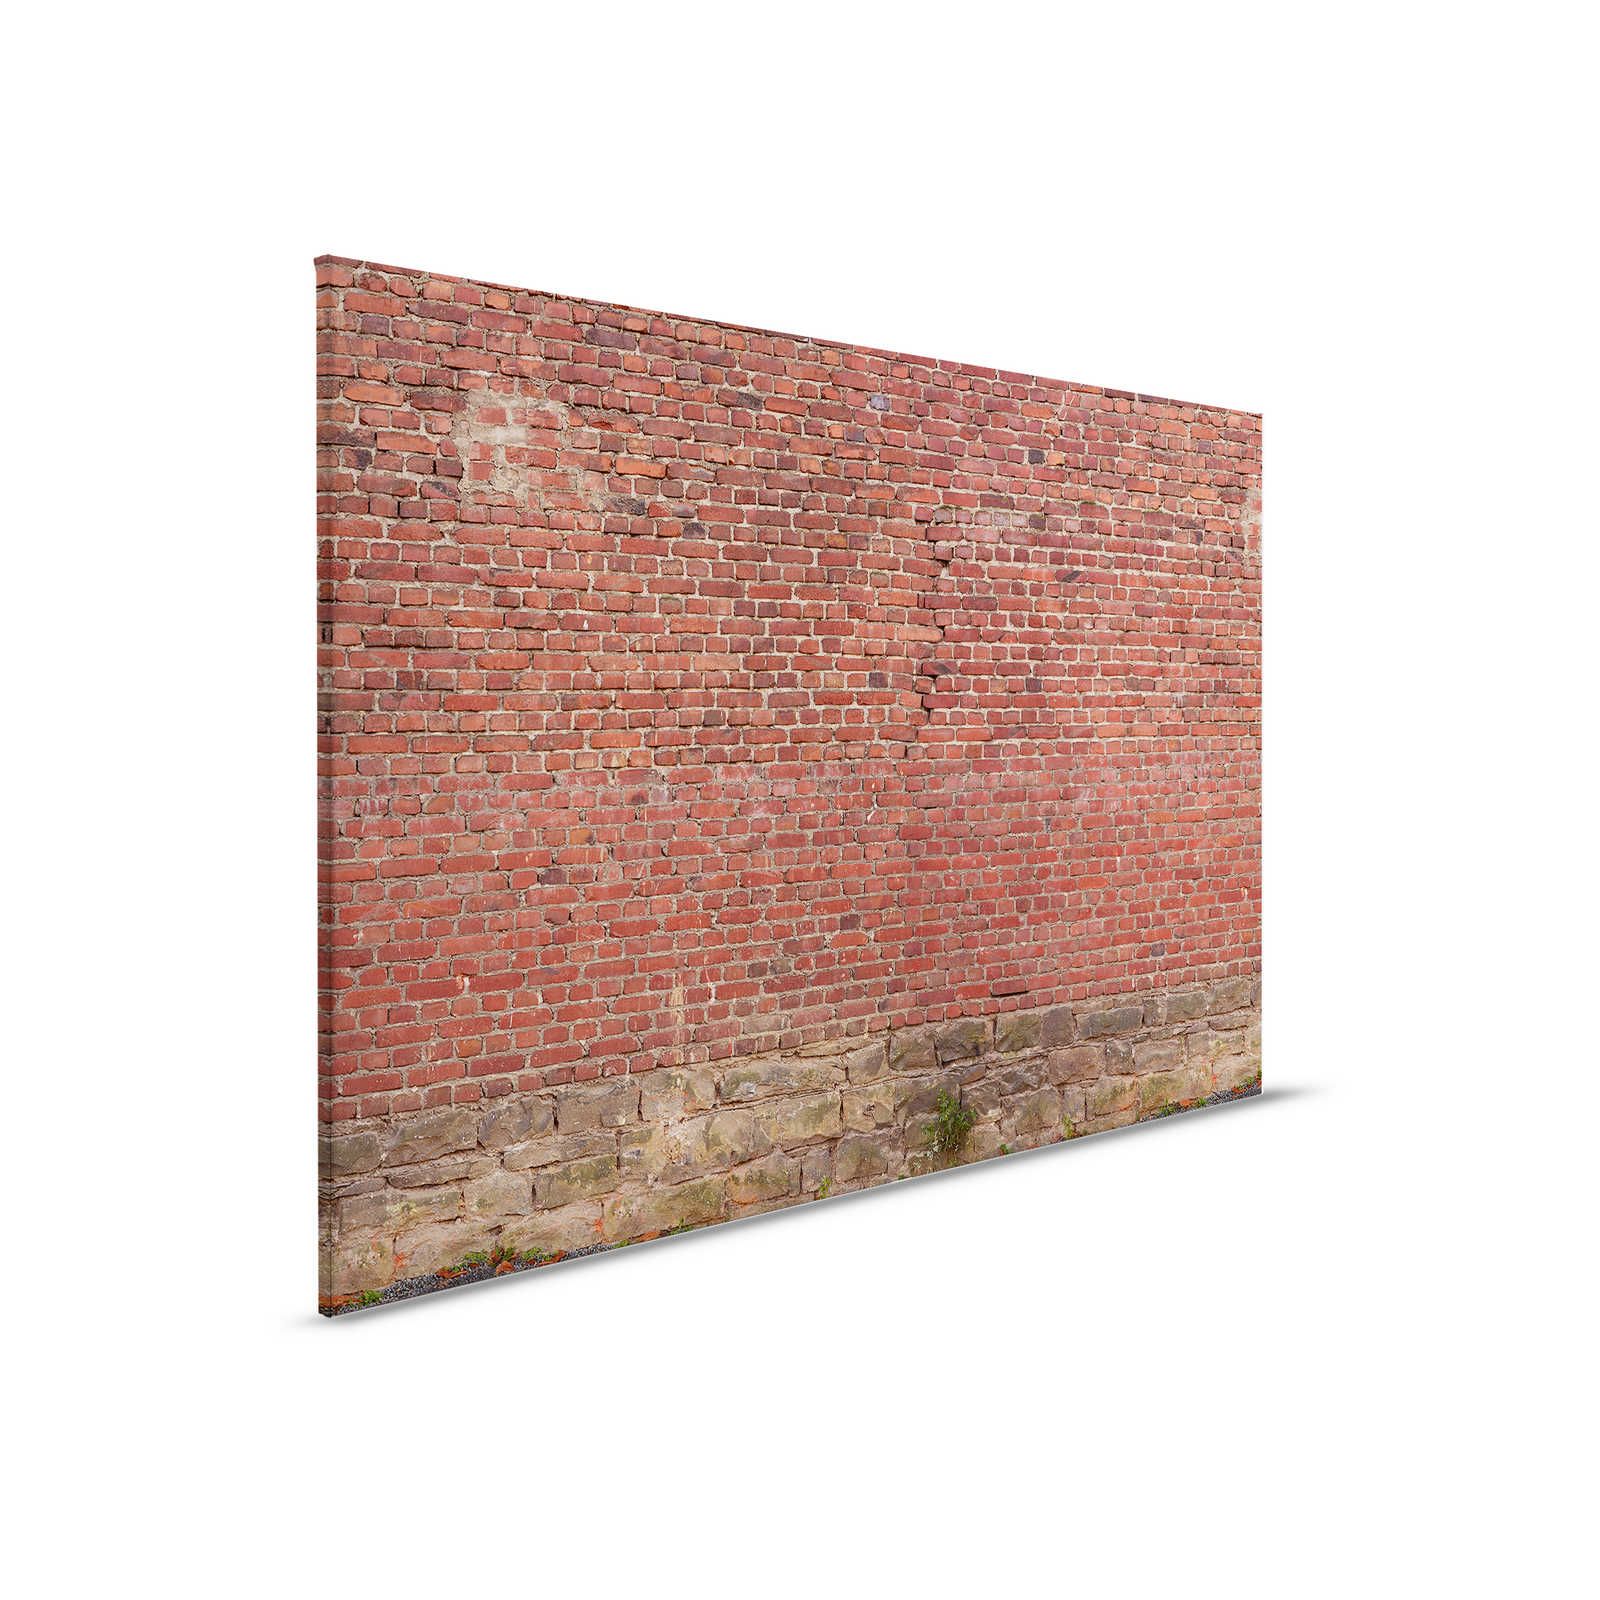         Leinwandbild rote Ziegelmauer – 0,90 m x 0,60 m
    